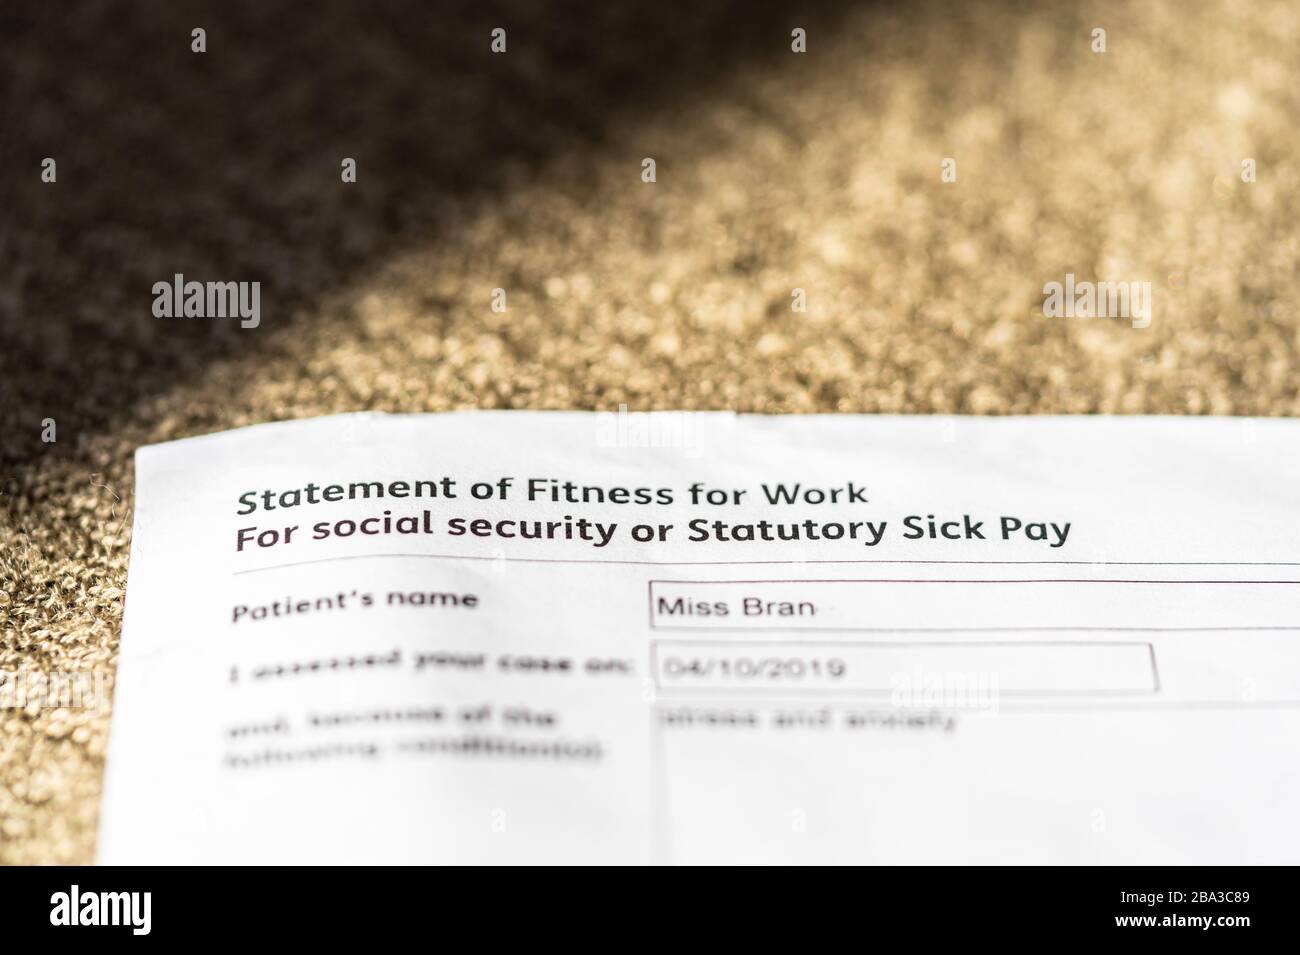 Dichiarazione di idoneità per lavoro per la sicurezza sociale / Statutory Sick Pay, Inghilterra, Regno Unito Foto Stock